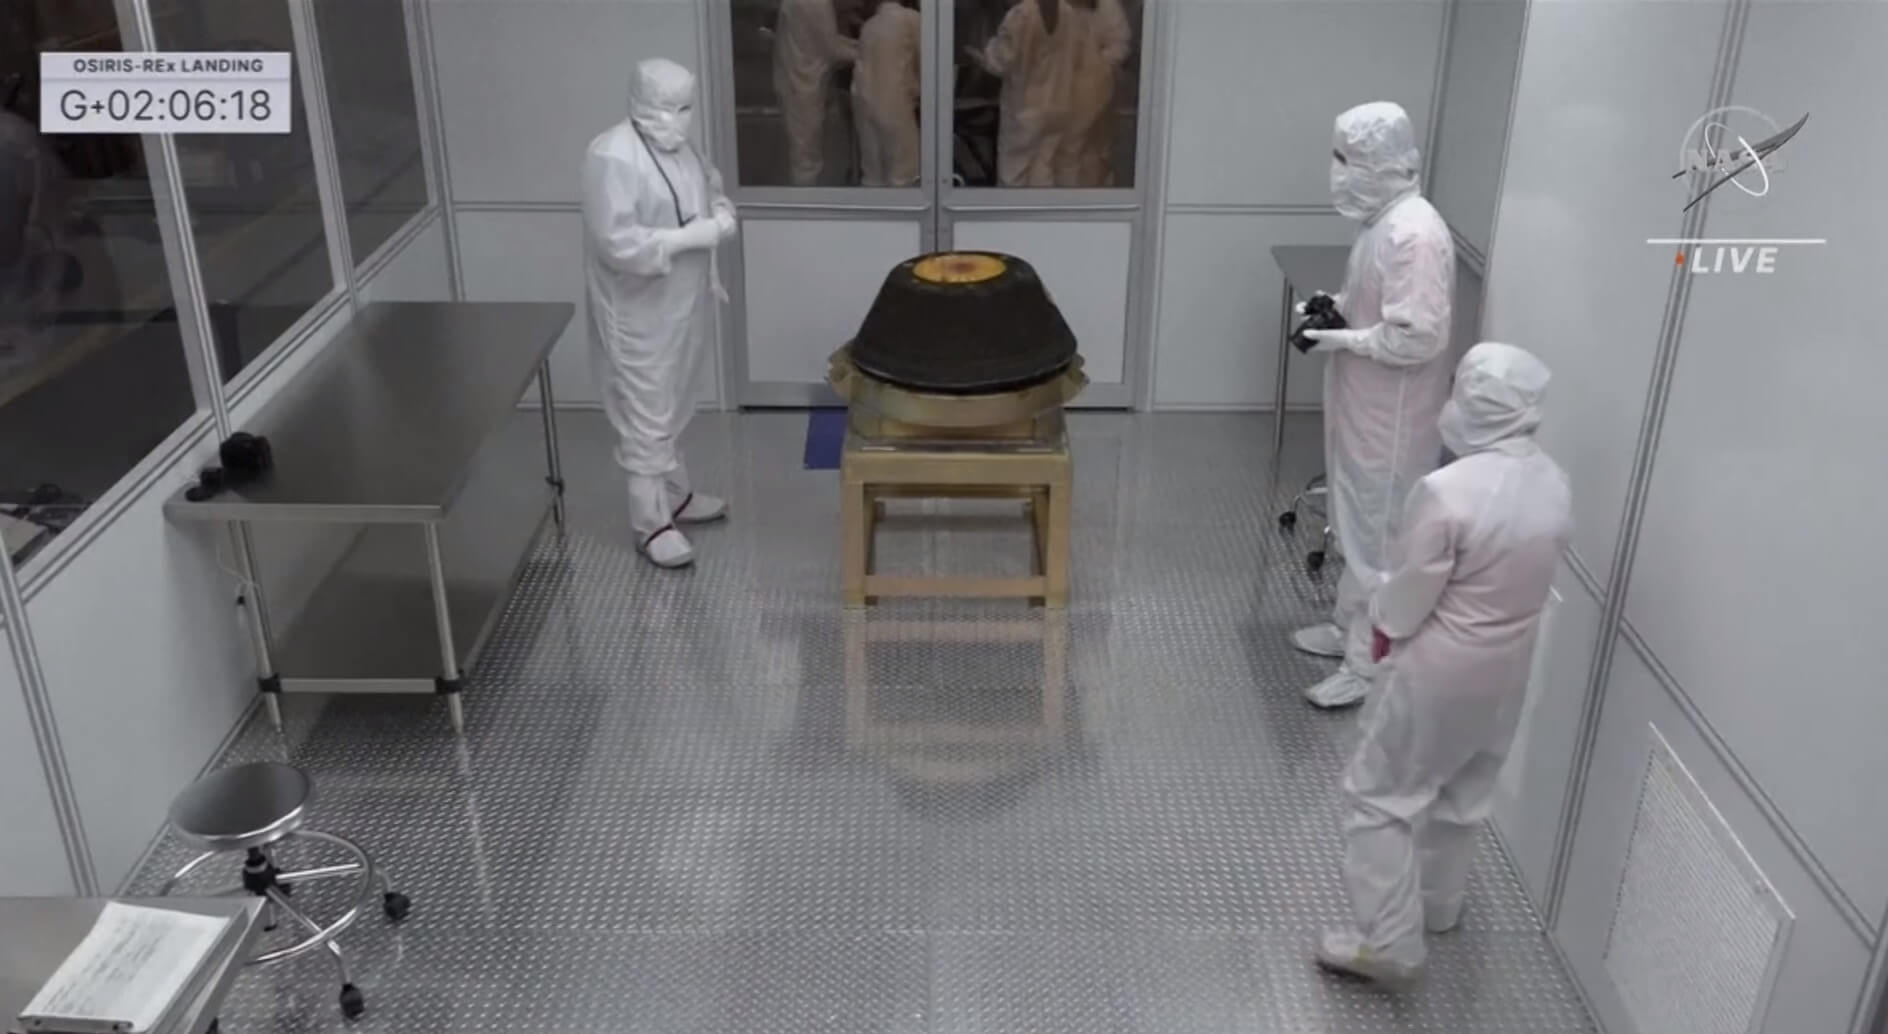 Образцы астероида Бенну доставлены на Землю. Люди в защитных костюмах во время изучения капсулы. Фото.